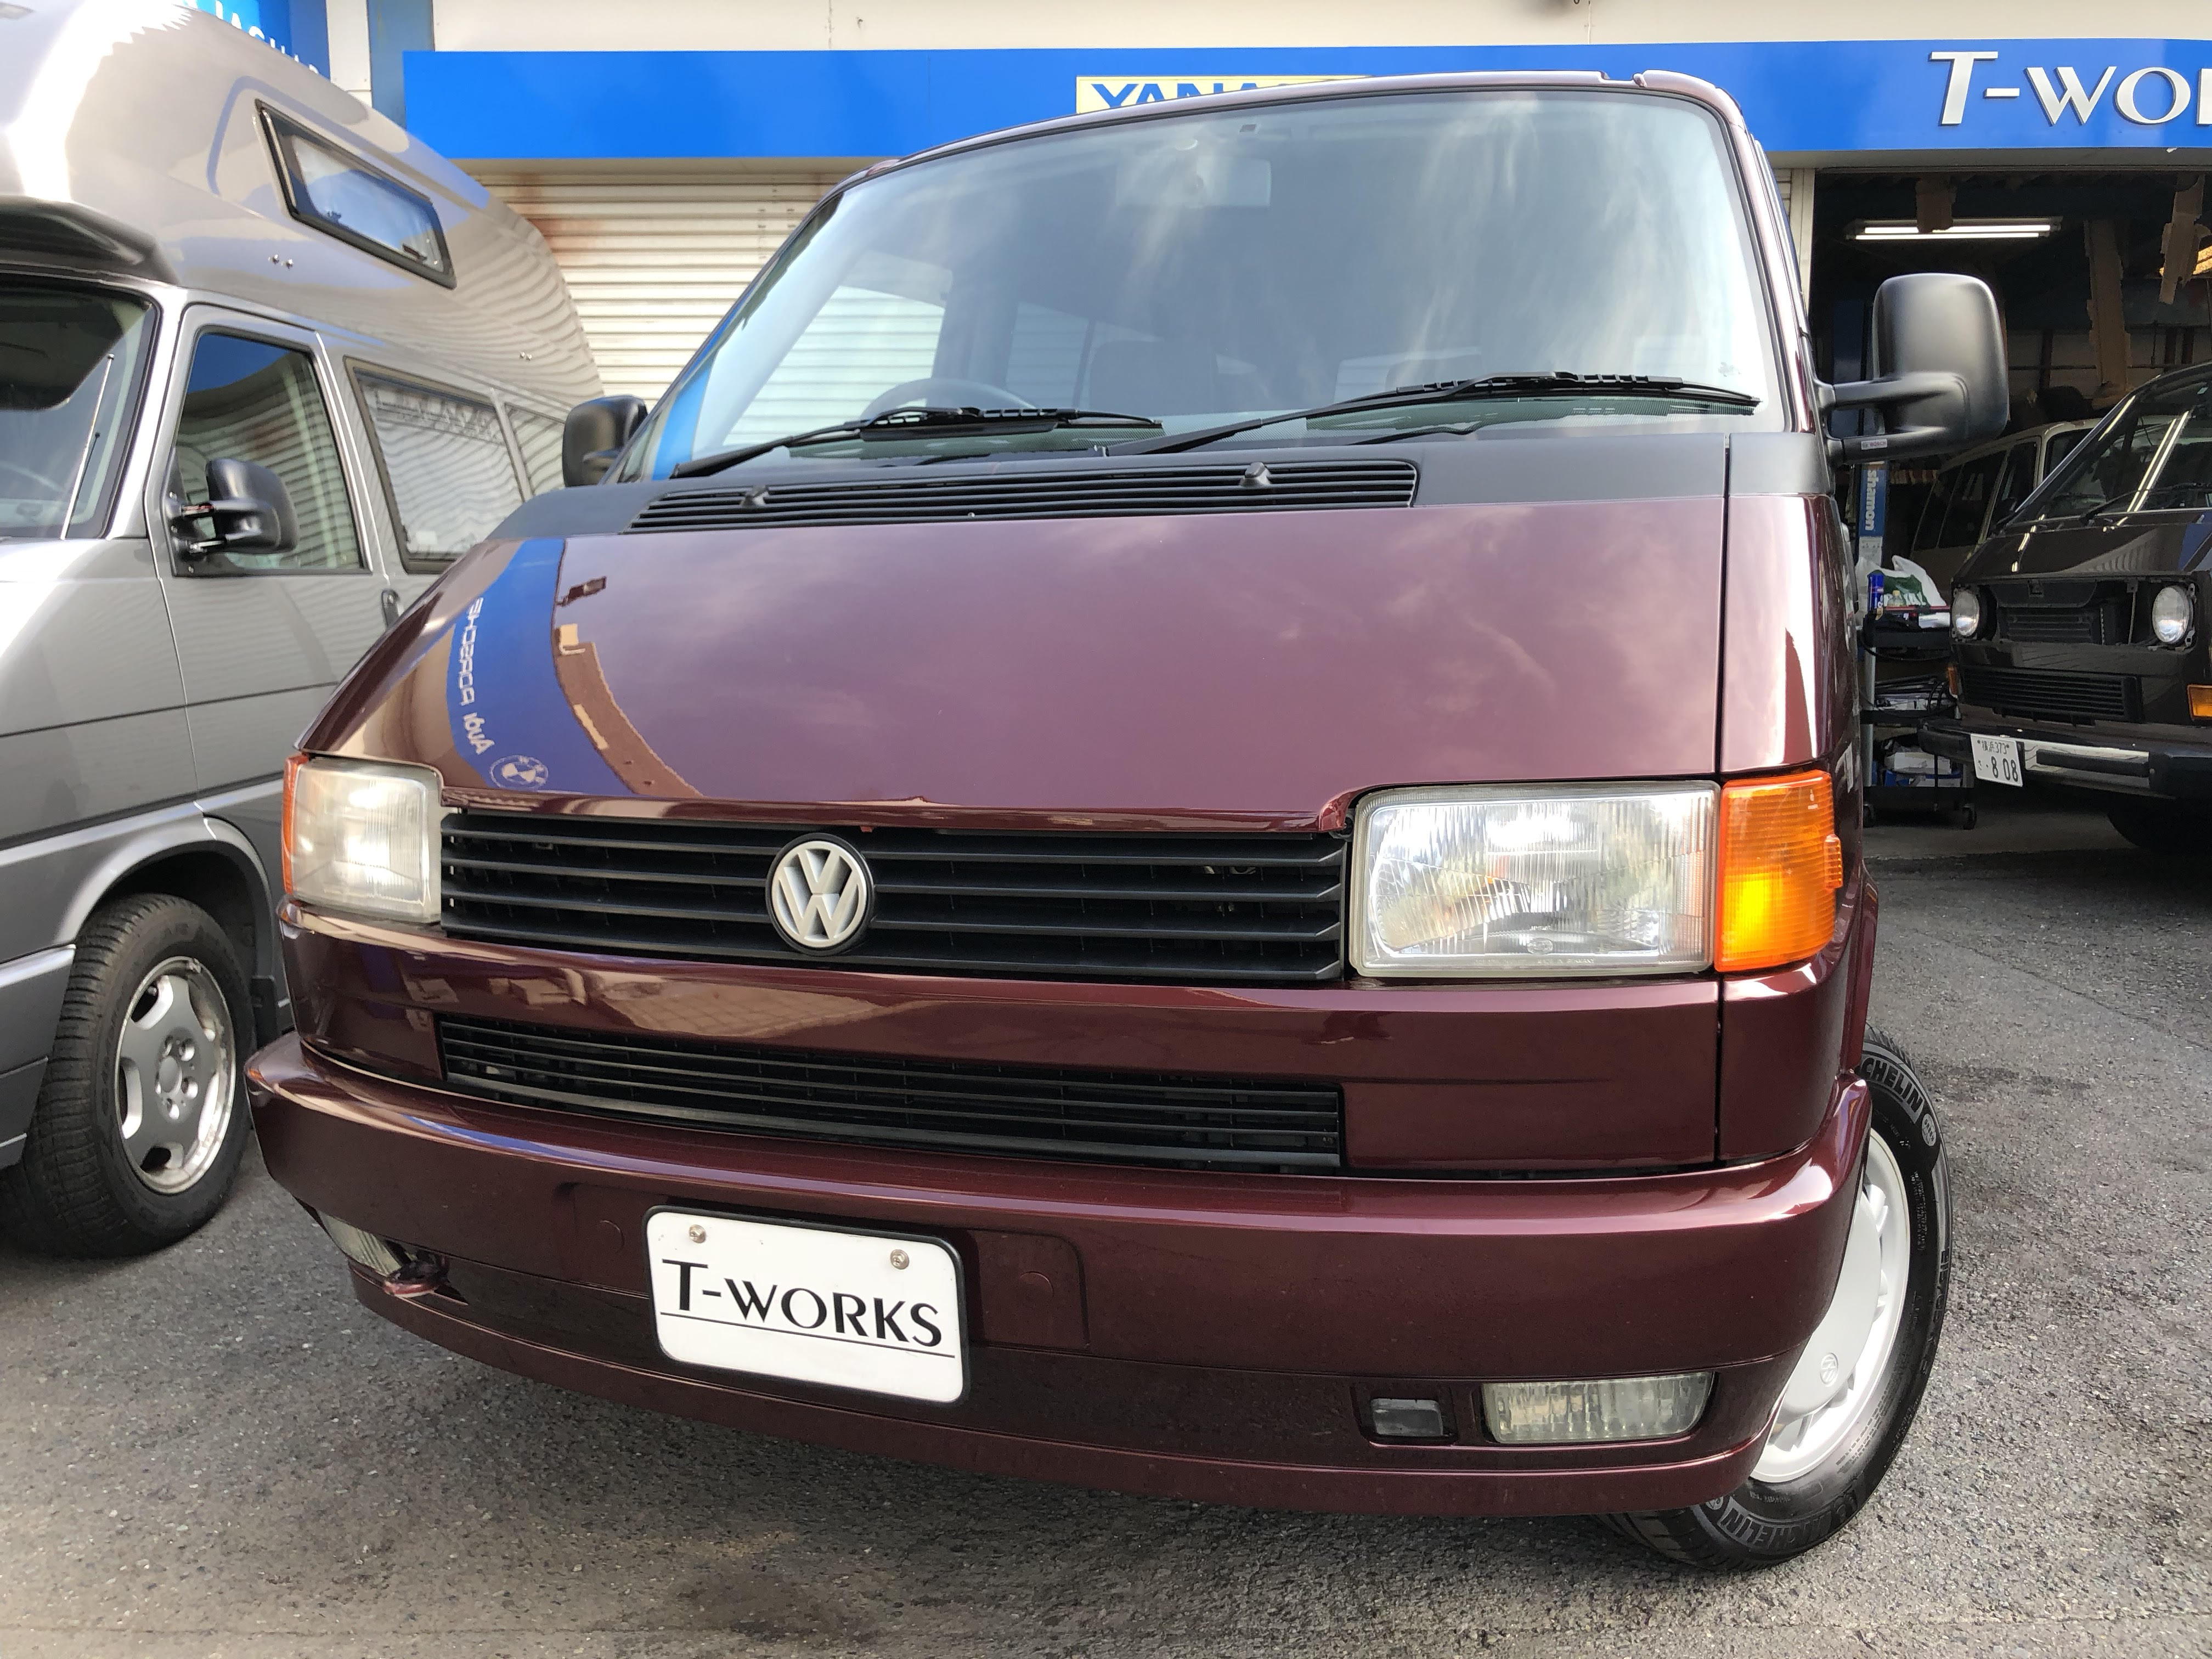 1996y VW T4 VANAGON – T-WORKS 公式ホームページ 横浜 輸入中古車販売店（ティーワークス）  T-WORKSは、他社の外車屋さんと異なったスタイルを自慢としてます。 とくに、輸入車の中でも、  ...